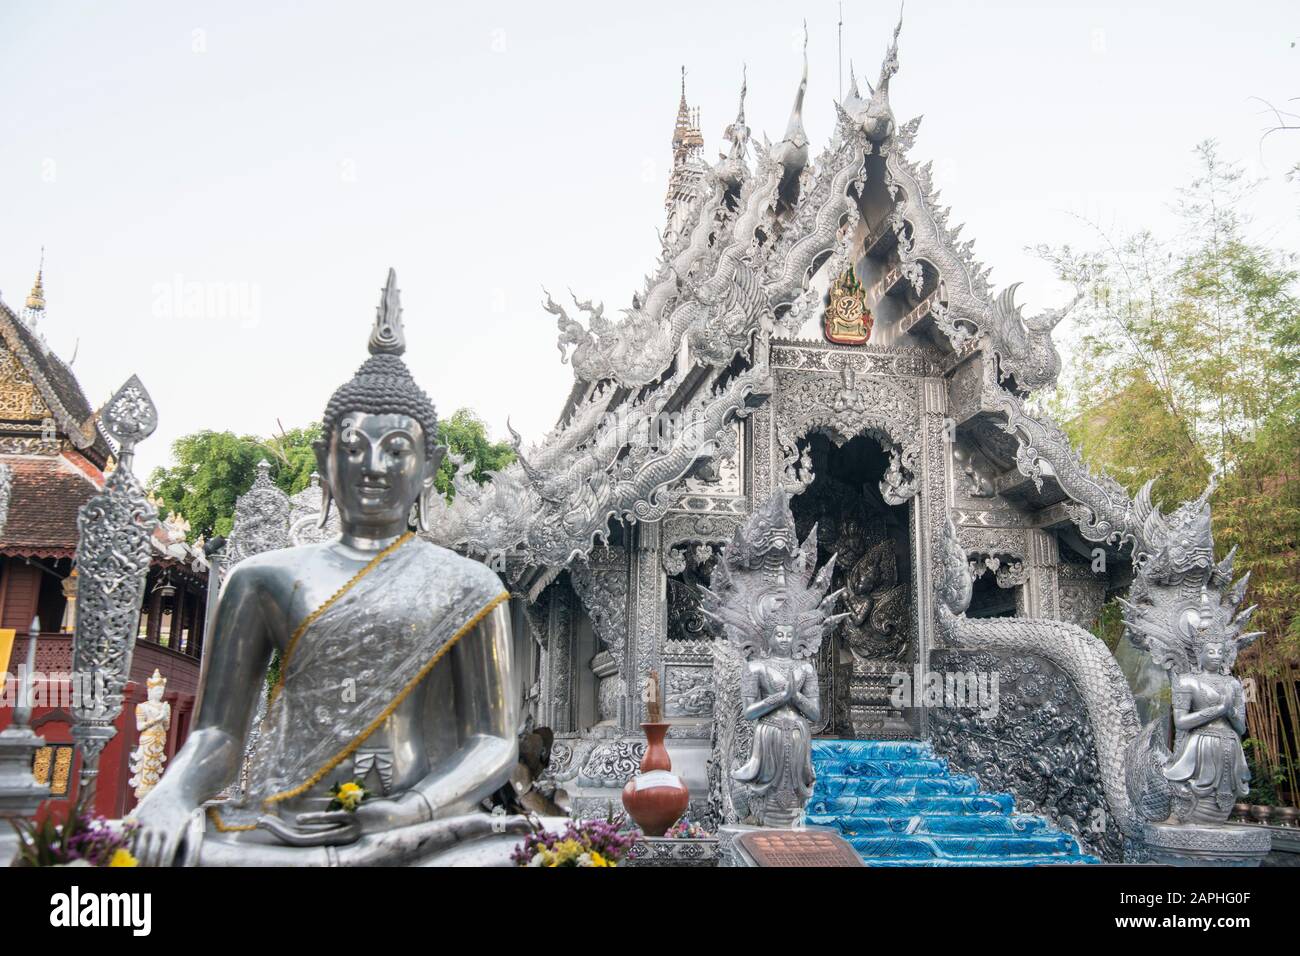 Le Temple d'argent ou Wat Sri Suphan dans la ville de Chiang Mai au nord de la Thaïlande. Thaïlande, Chiang Mai, Novembre 2019 Banque D'Images